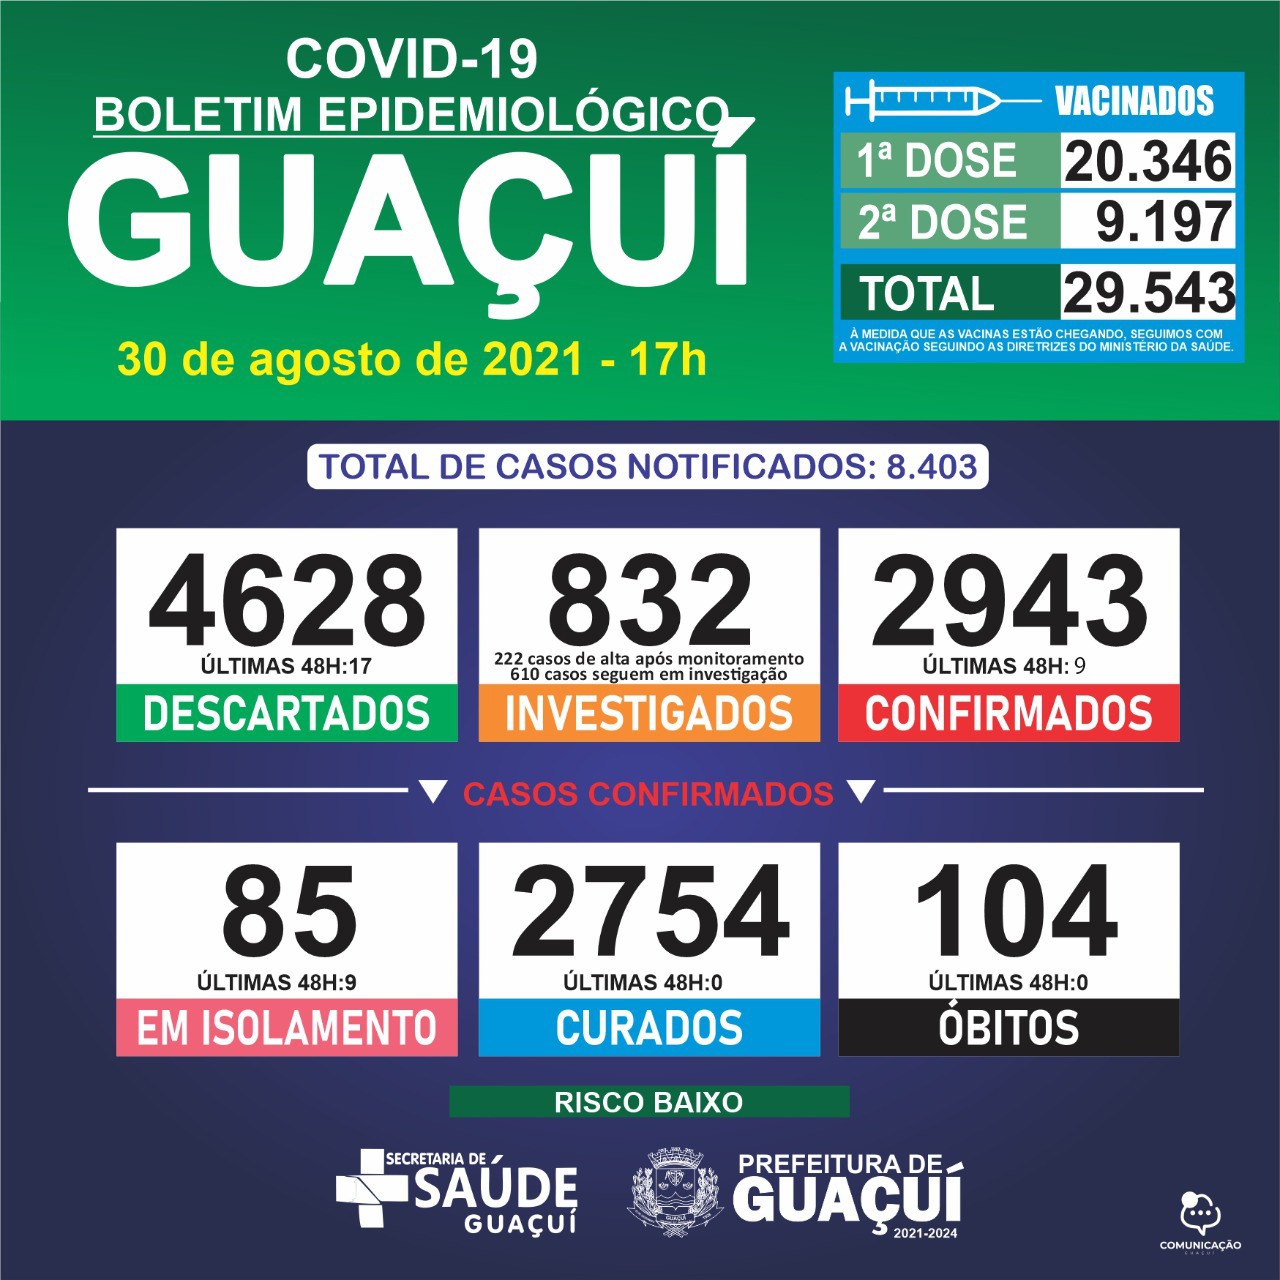 Boletim Epidemiológico 30/08/21: Guaçuí registra 9 casos confirmados nas ultimas 48 horas